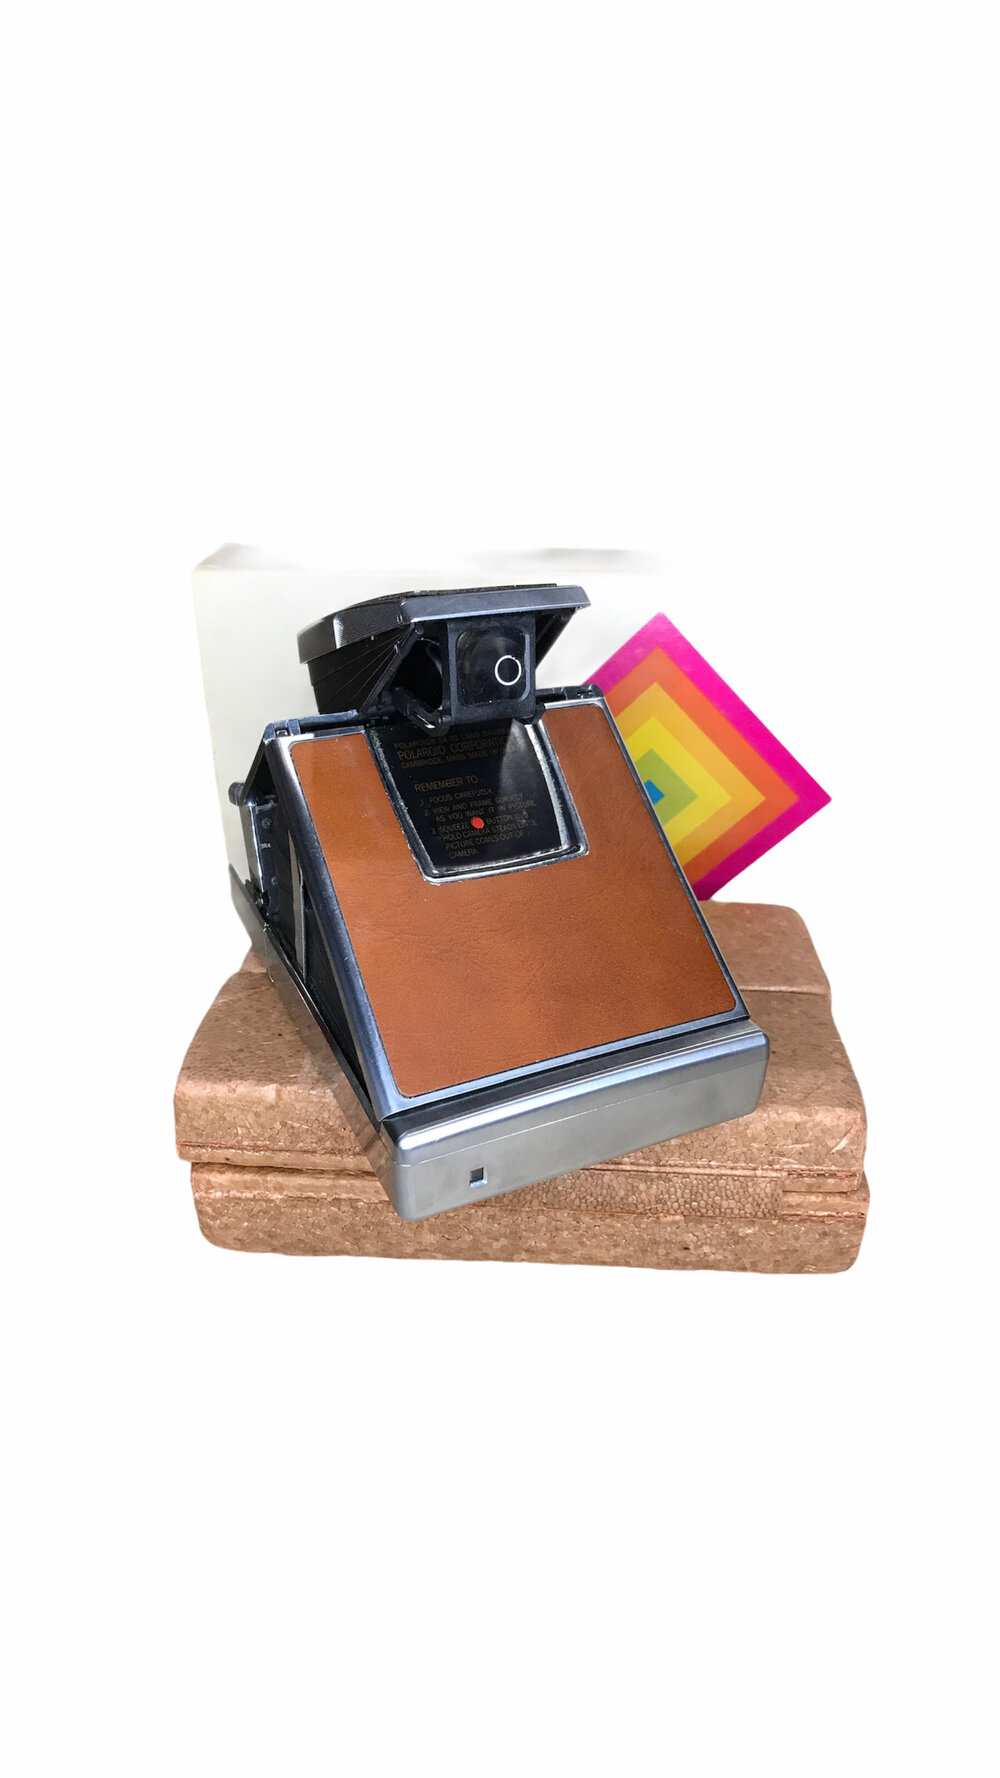 その他 その他 Polaroid SX-70 Land Camera and Accessory Kit — Camera Center